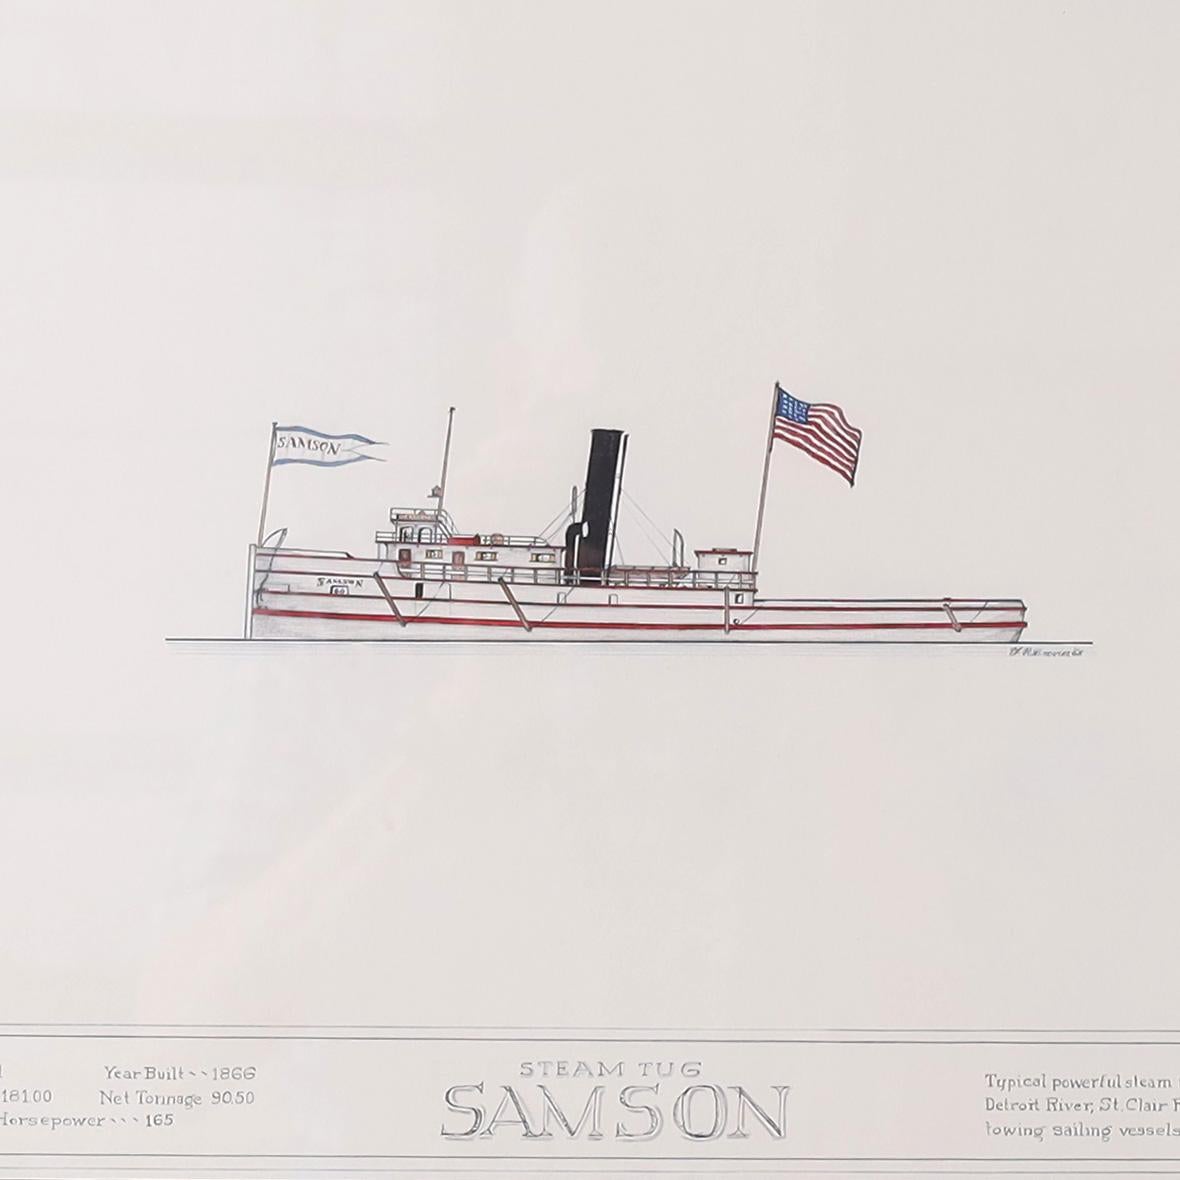 Peinture à l'encre et à la gouache sur papier d'un bateau à vapeur des Grands Lacs du XIXe siècle, exécutée dans un style précis de dessinateur et signée par le célèbre artiste américain Frank Crevier, encadrée et présentée sous verre. Comme le